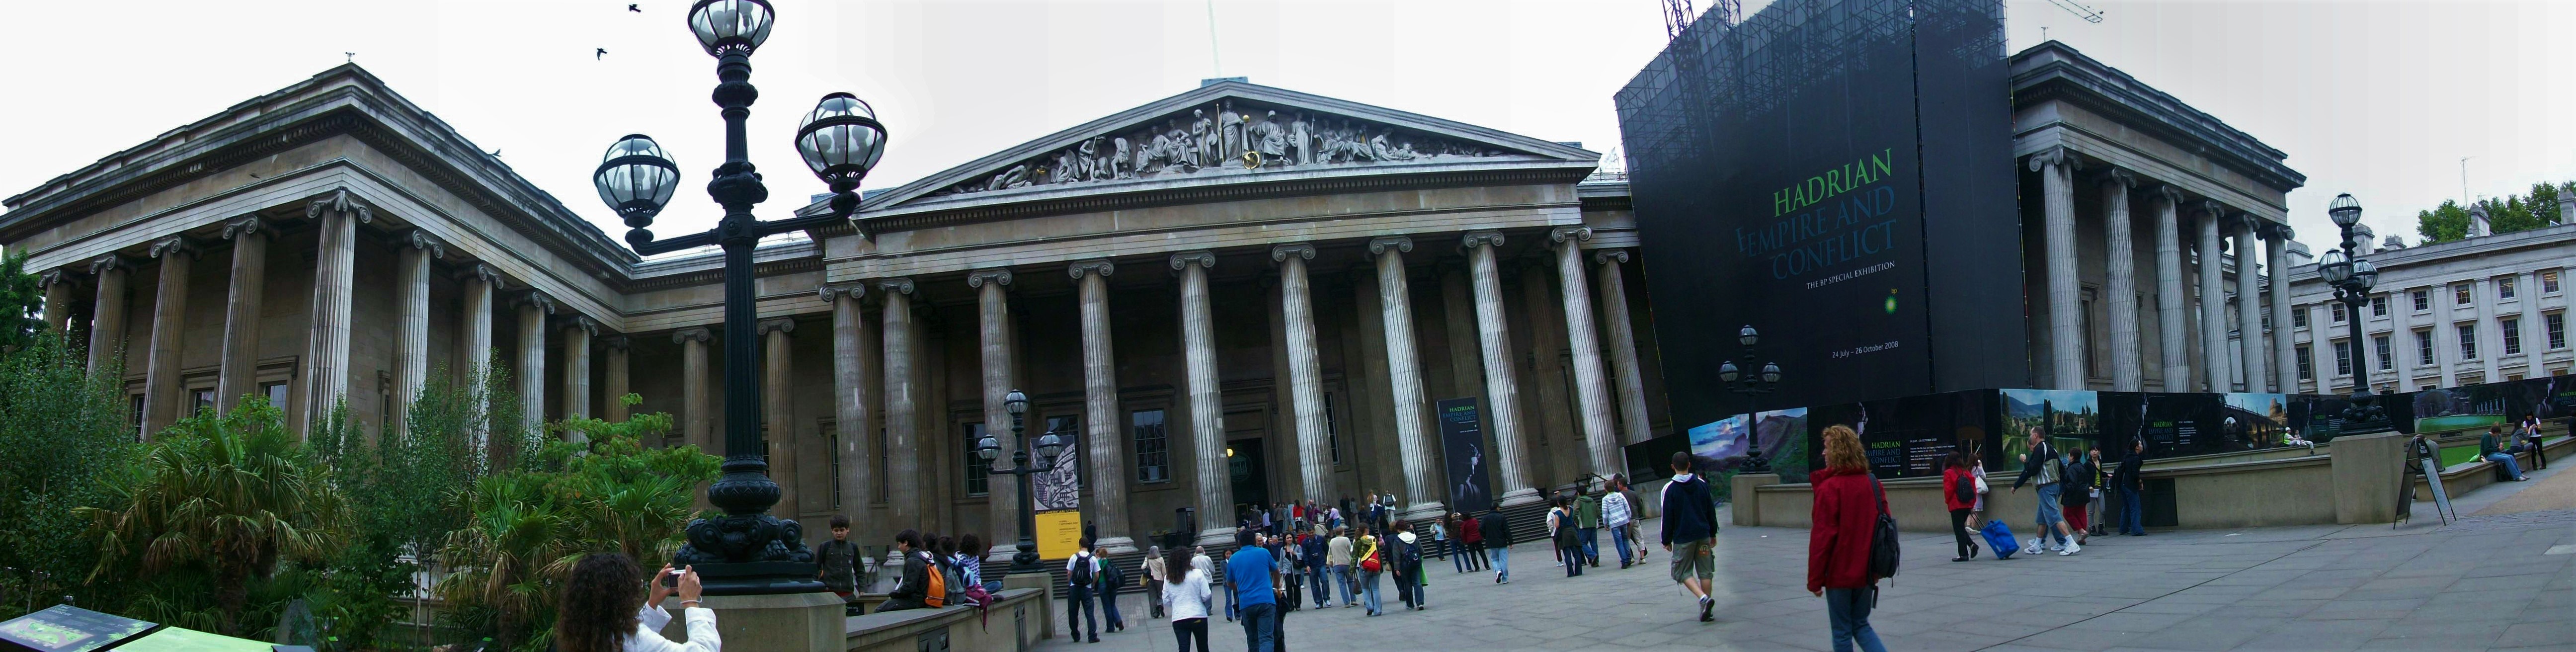 British Museum 360